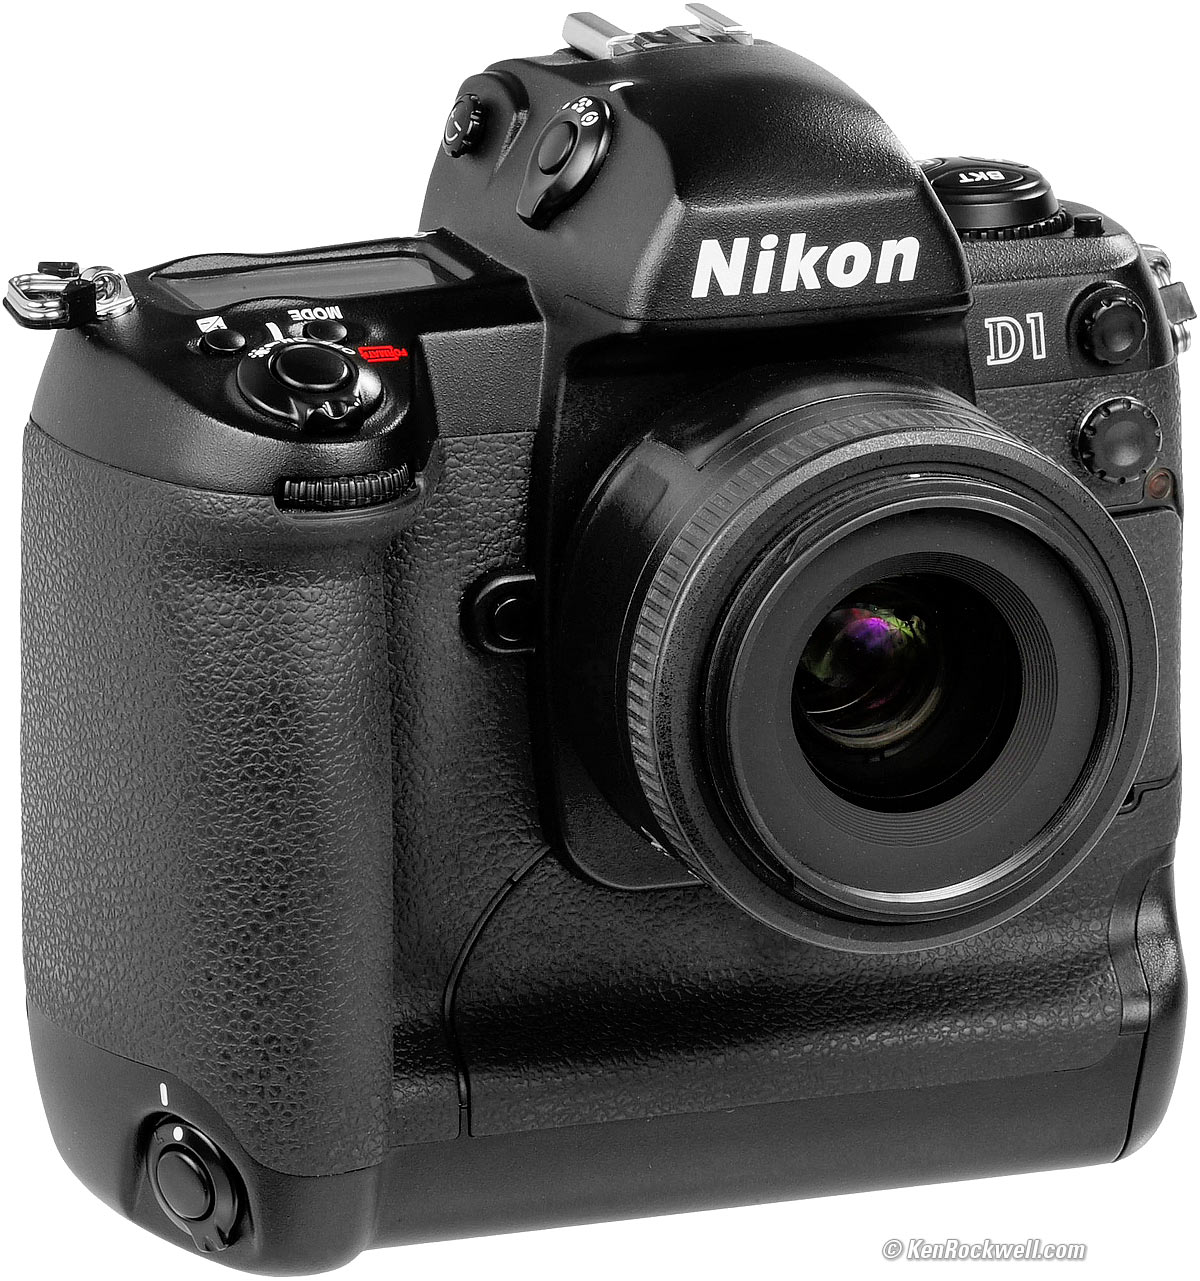 Nikon D1 Review